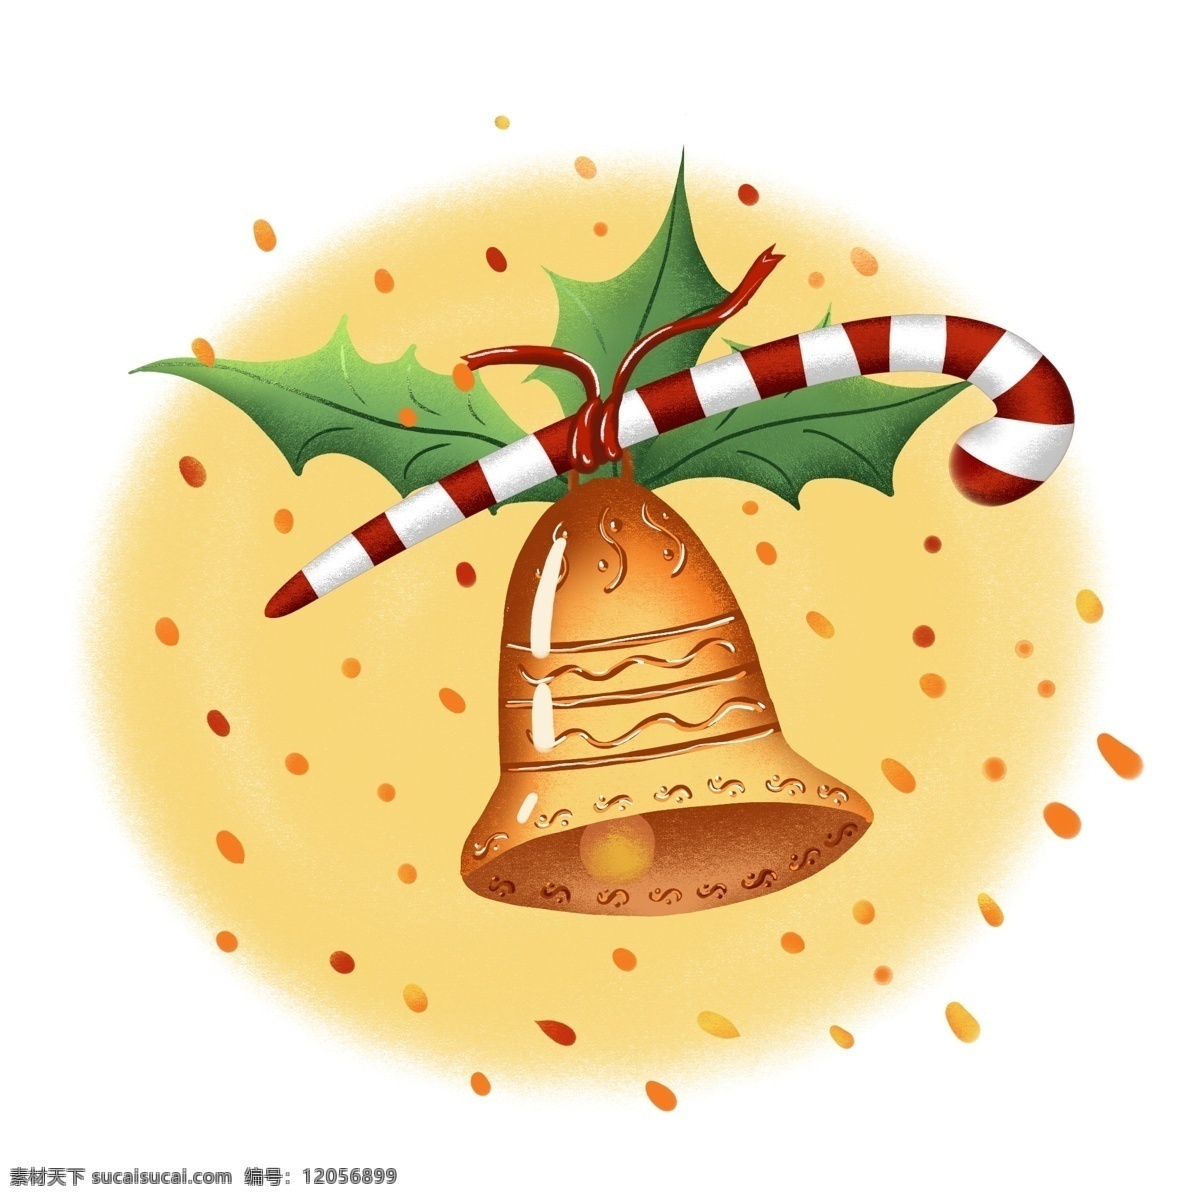 圣诞 铃铛 手绘 节日 插画 商用 元素 圣诞节 圣诞节元素 圣诞铃铛 金色 风 ps 分层